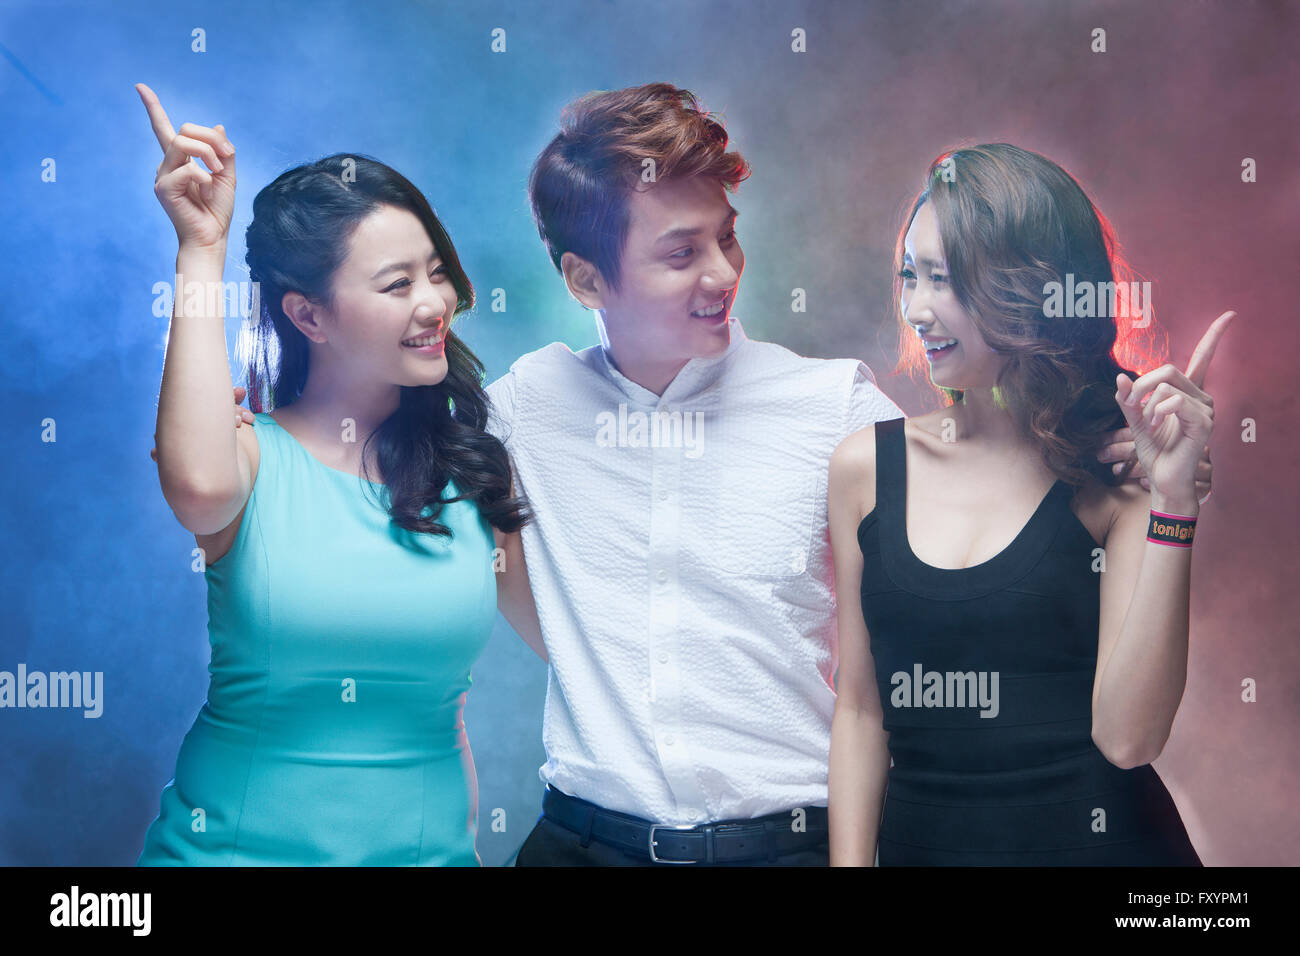 Retrato de tres jóvenes sonriente cara a cara en discoteca Foto de stock